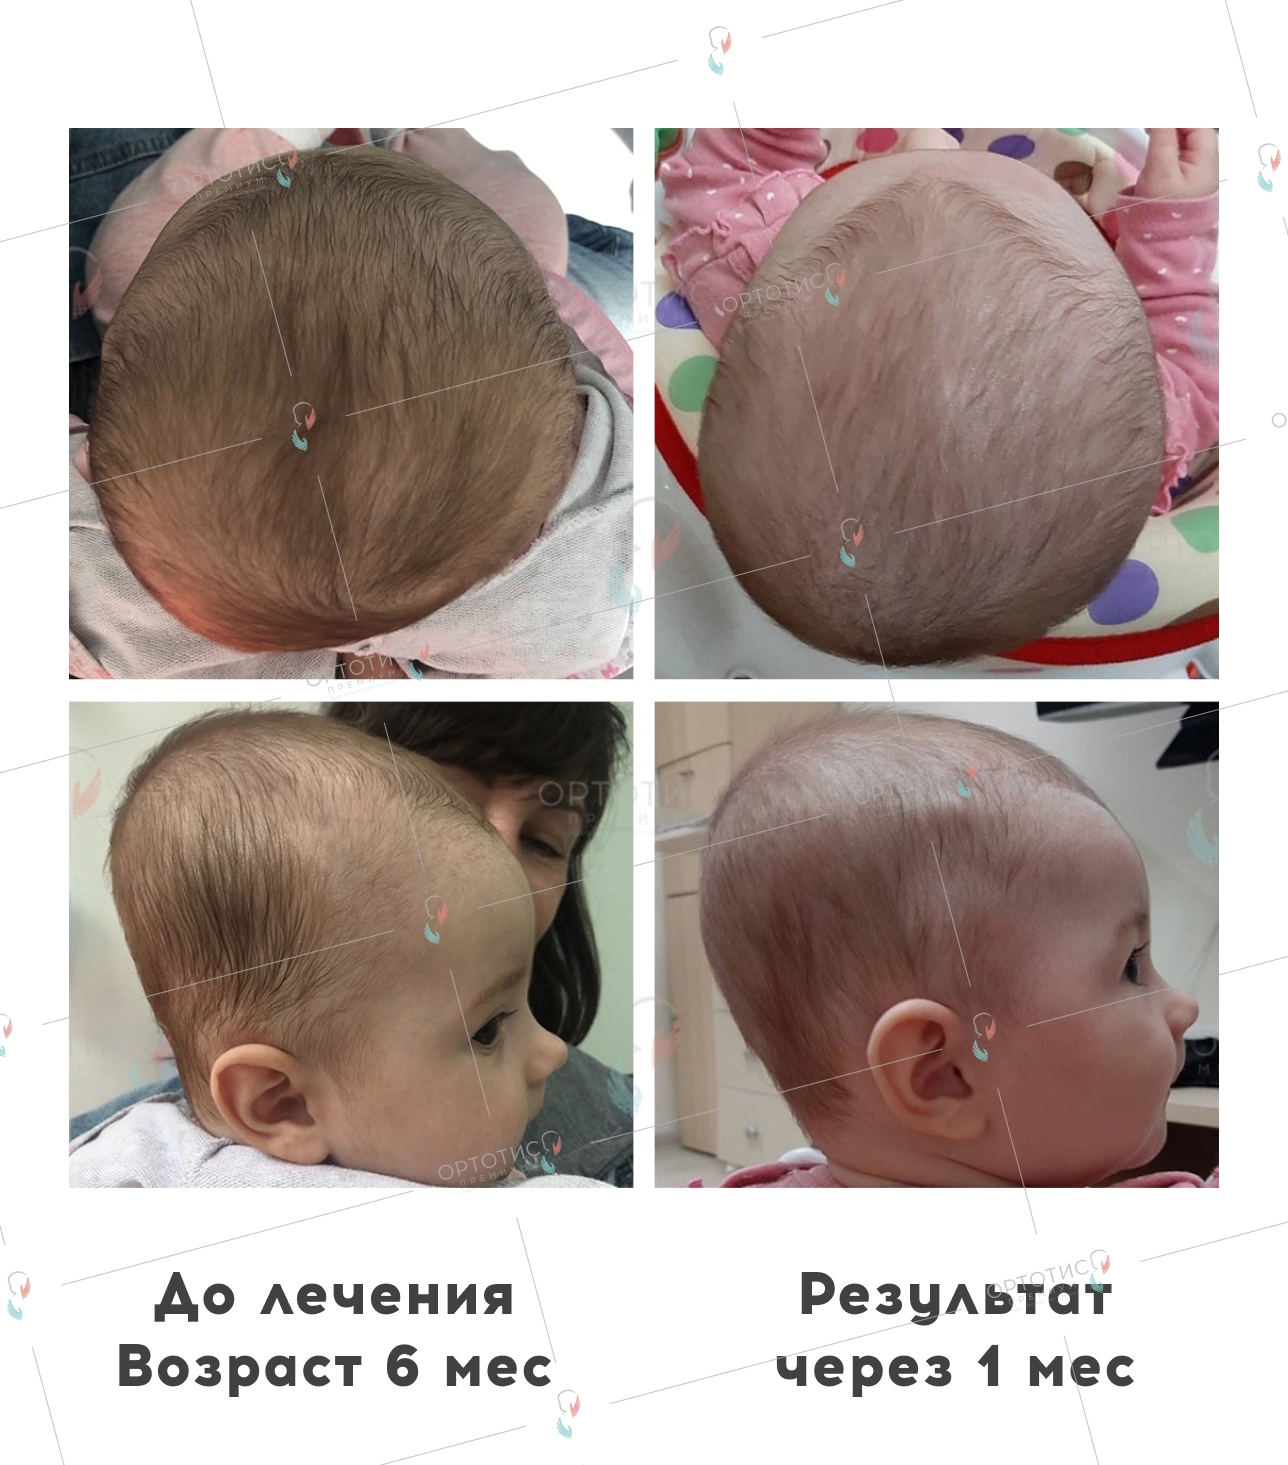 Плагиоцефалия, 4 месяцев - Ортотис Премиум